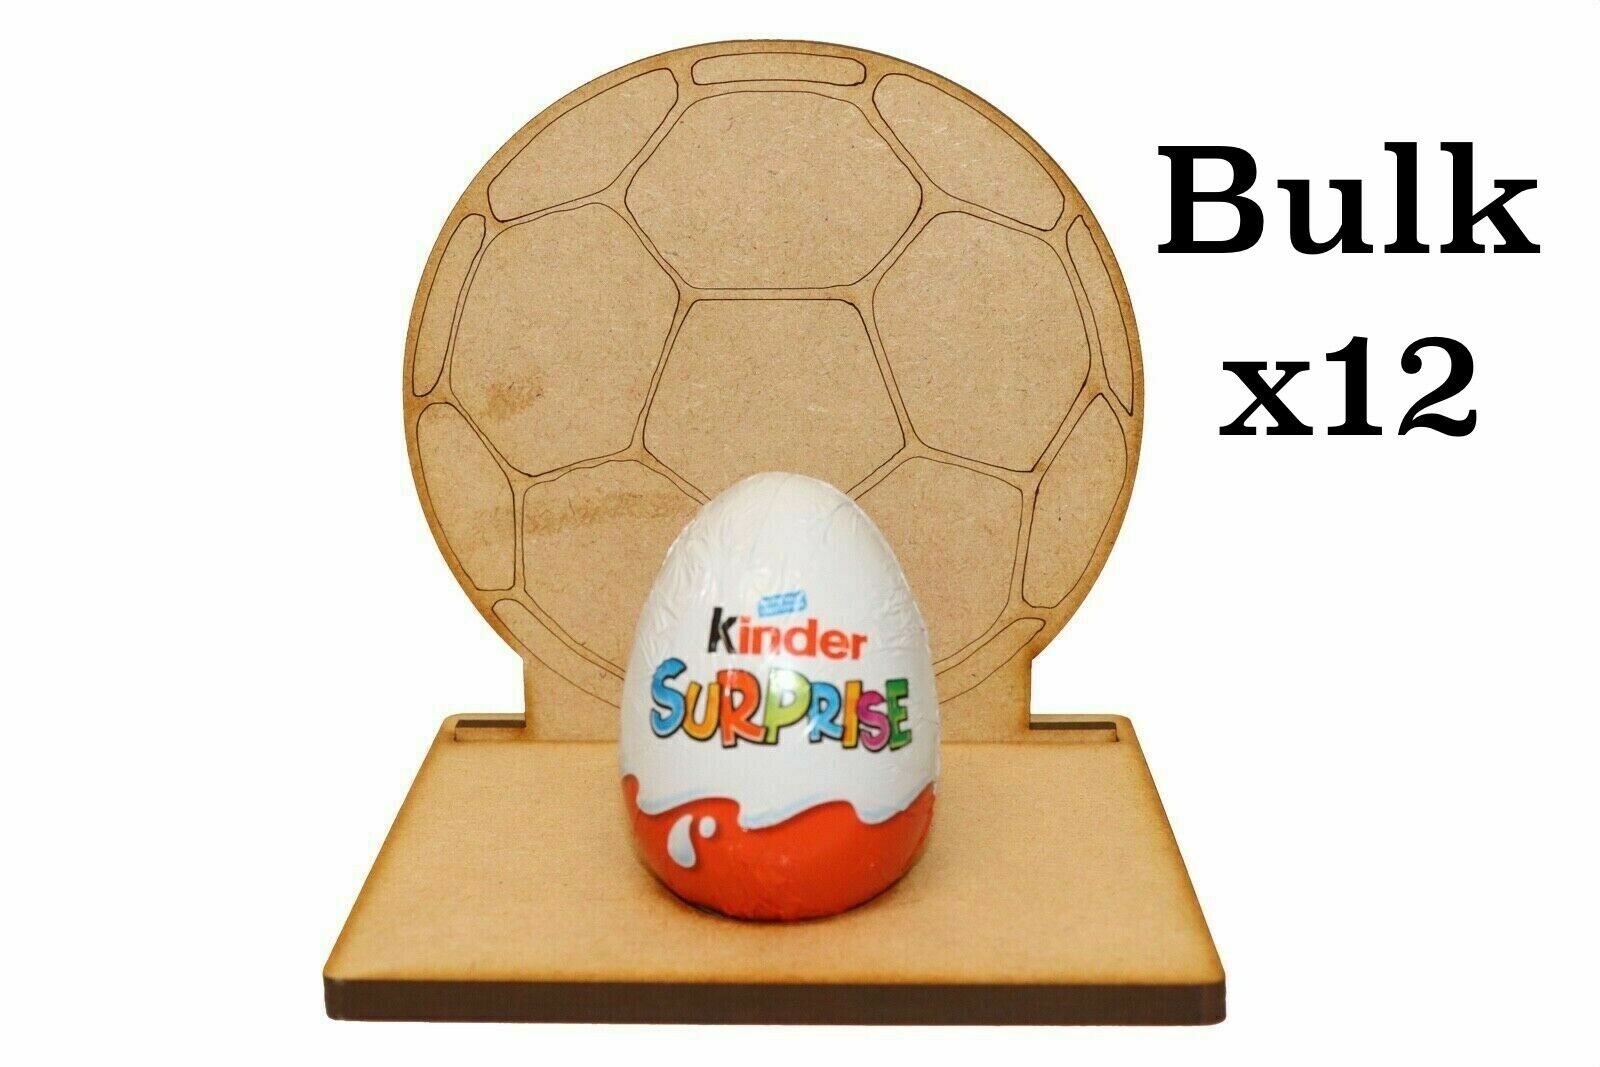 Wooden MDF Dinosaur Craft Easter Kinder Egg Holder Stand Easter Gift BULK x12 